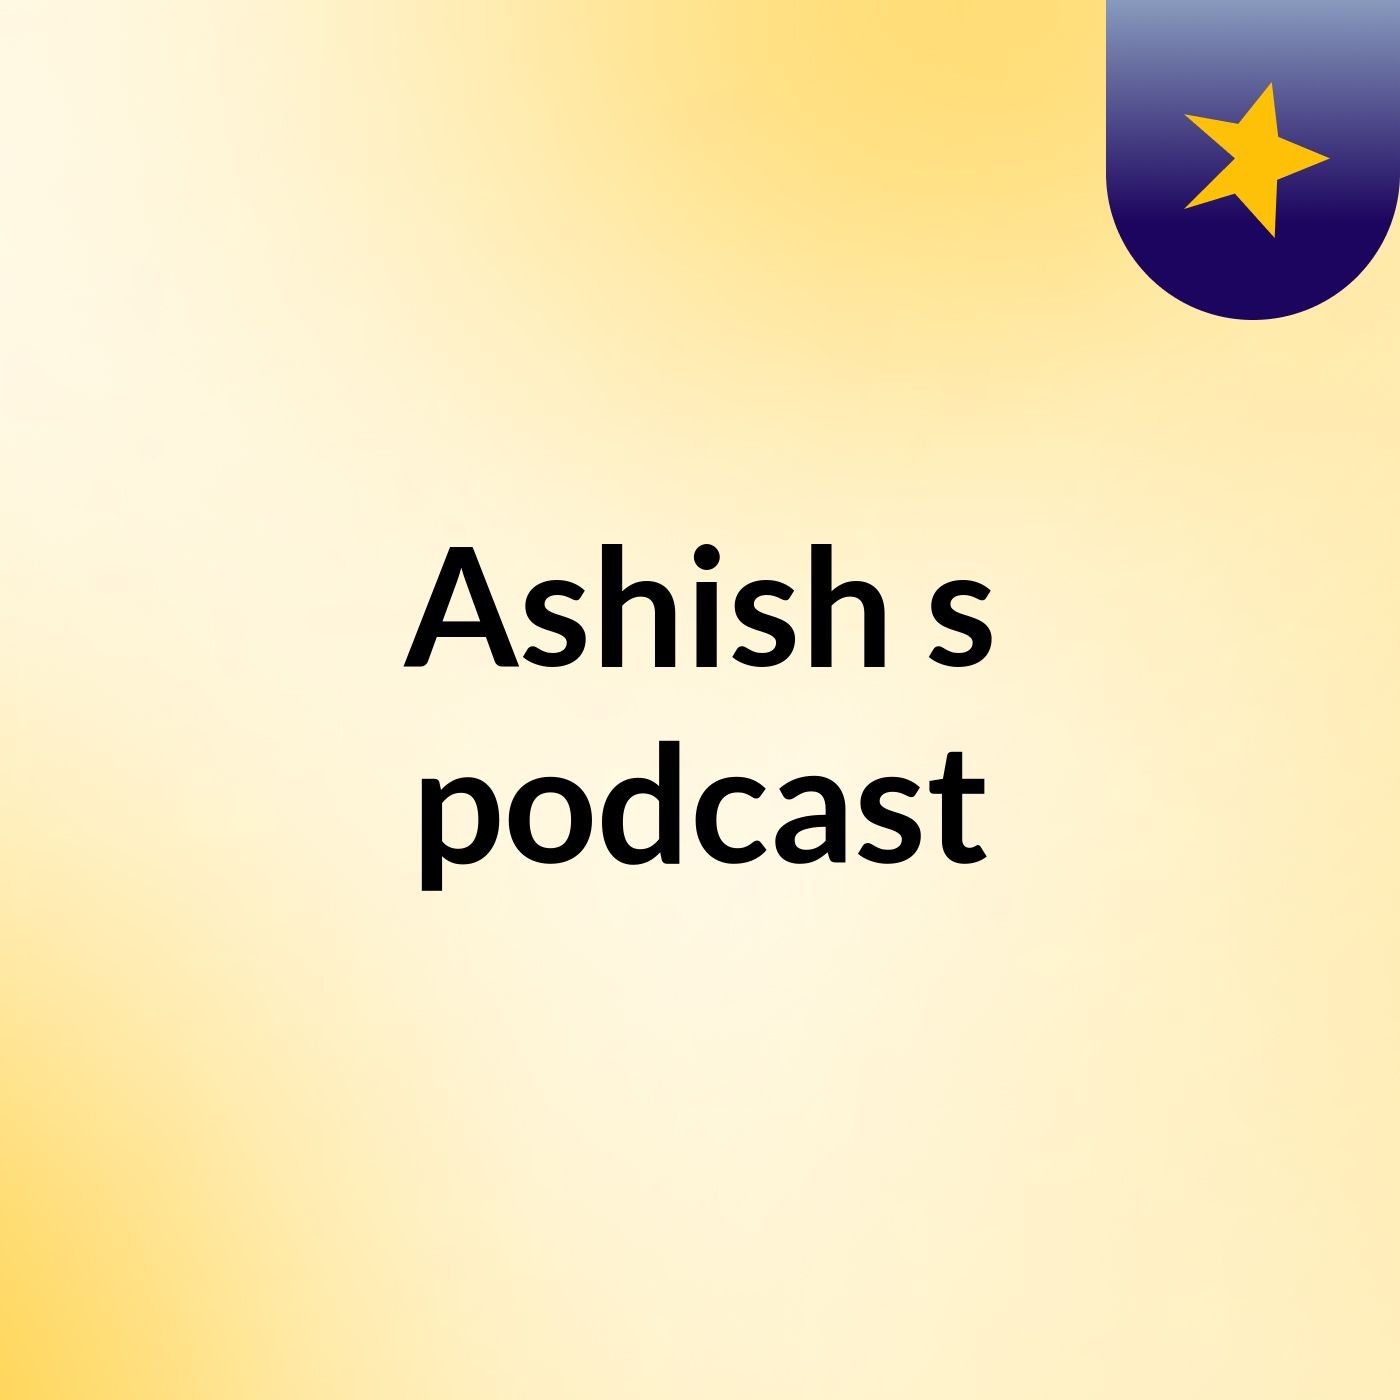 Ashish's podcast